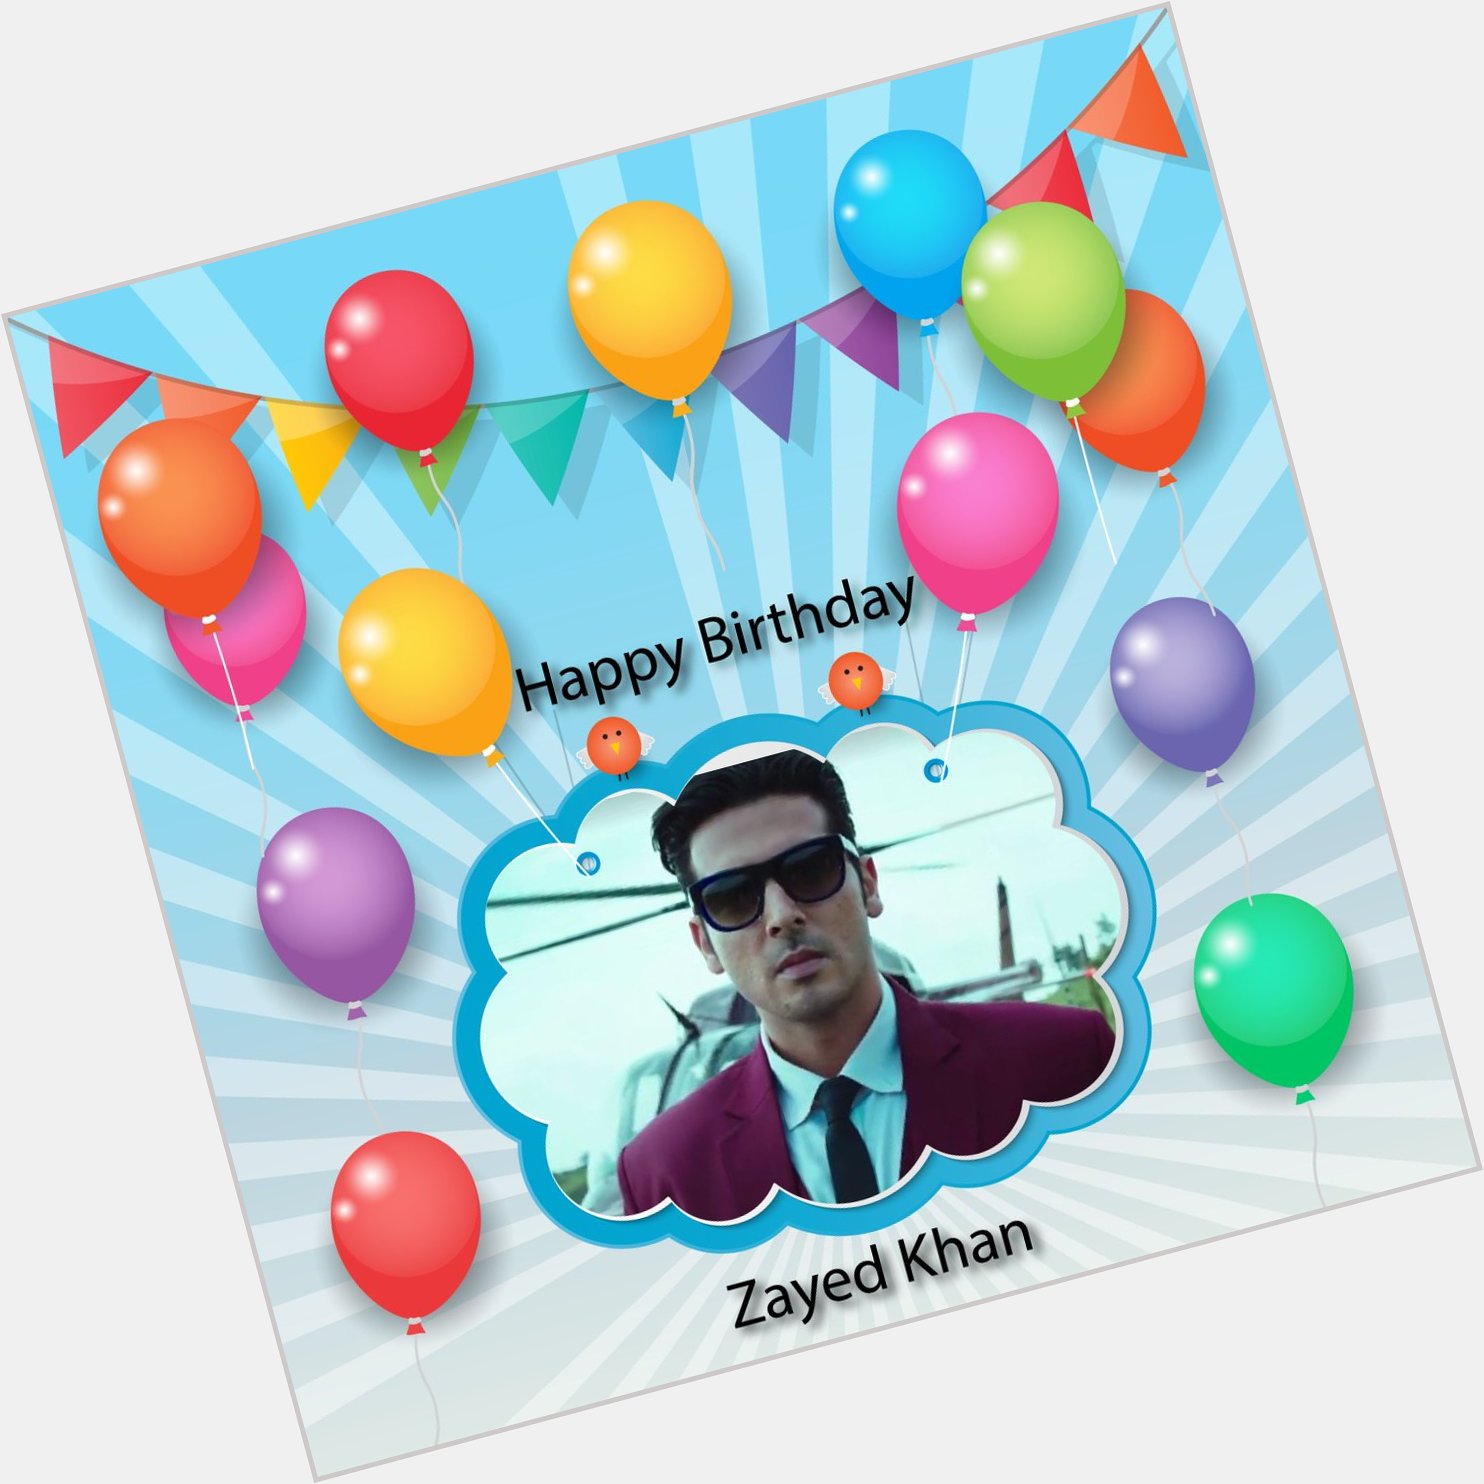 Happy birthday to zayed Khan 